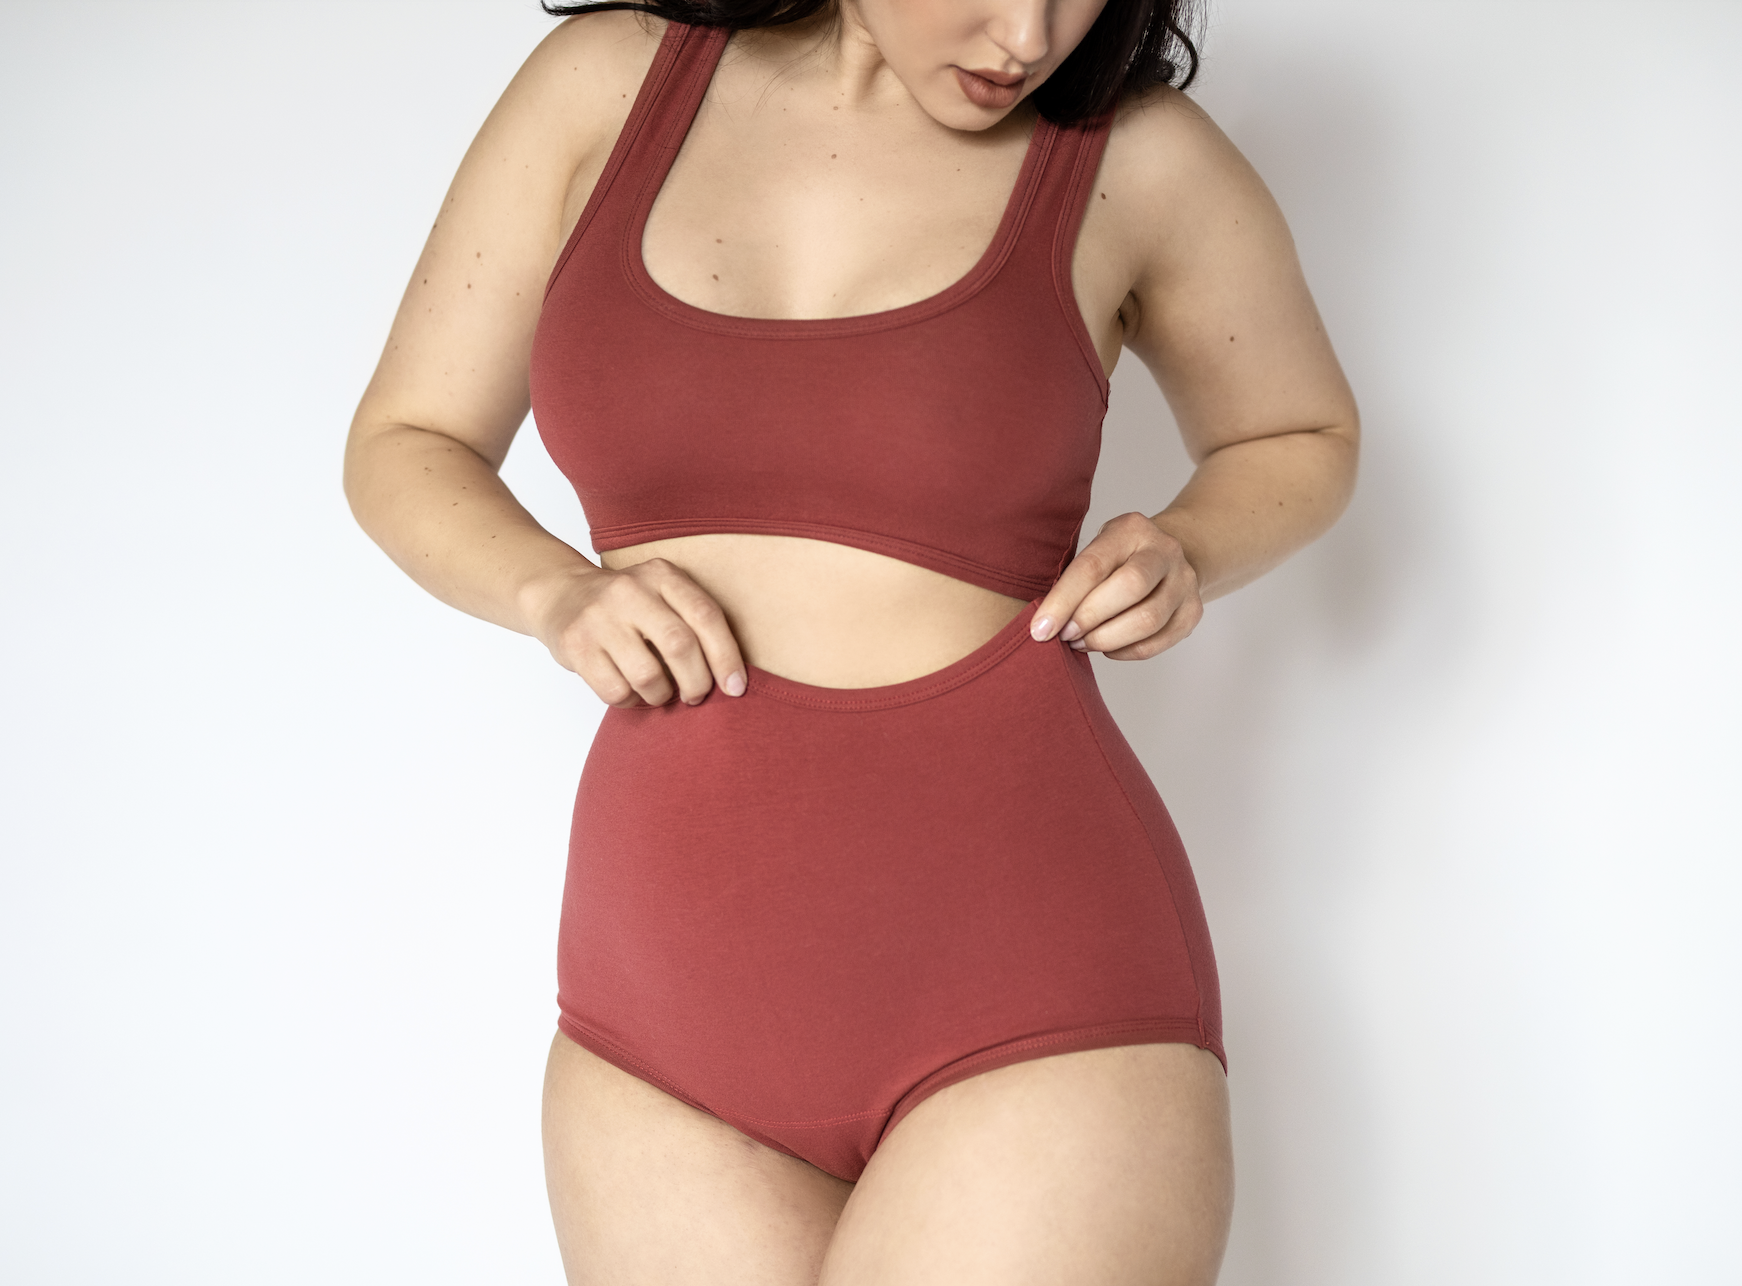 a woman wearing red underwear